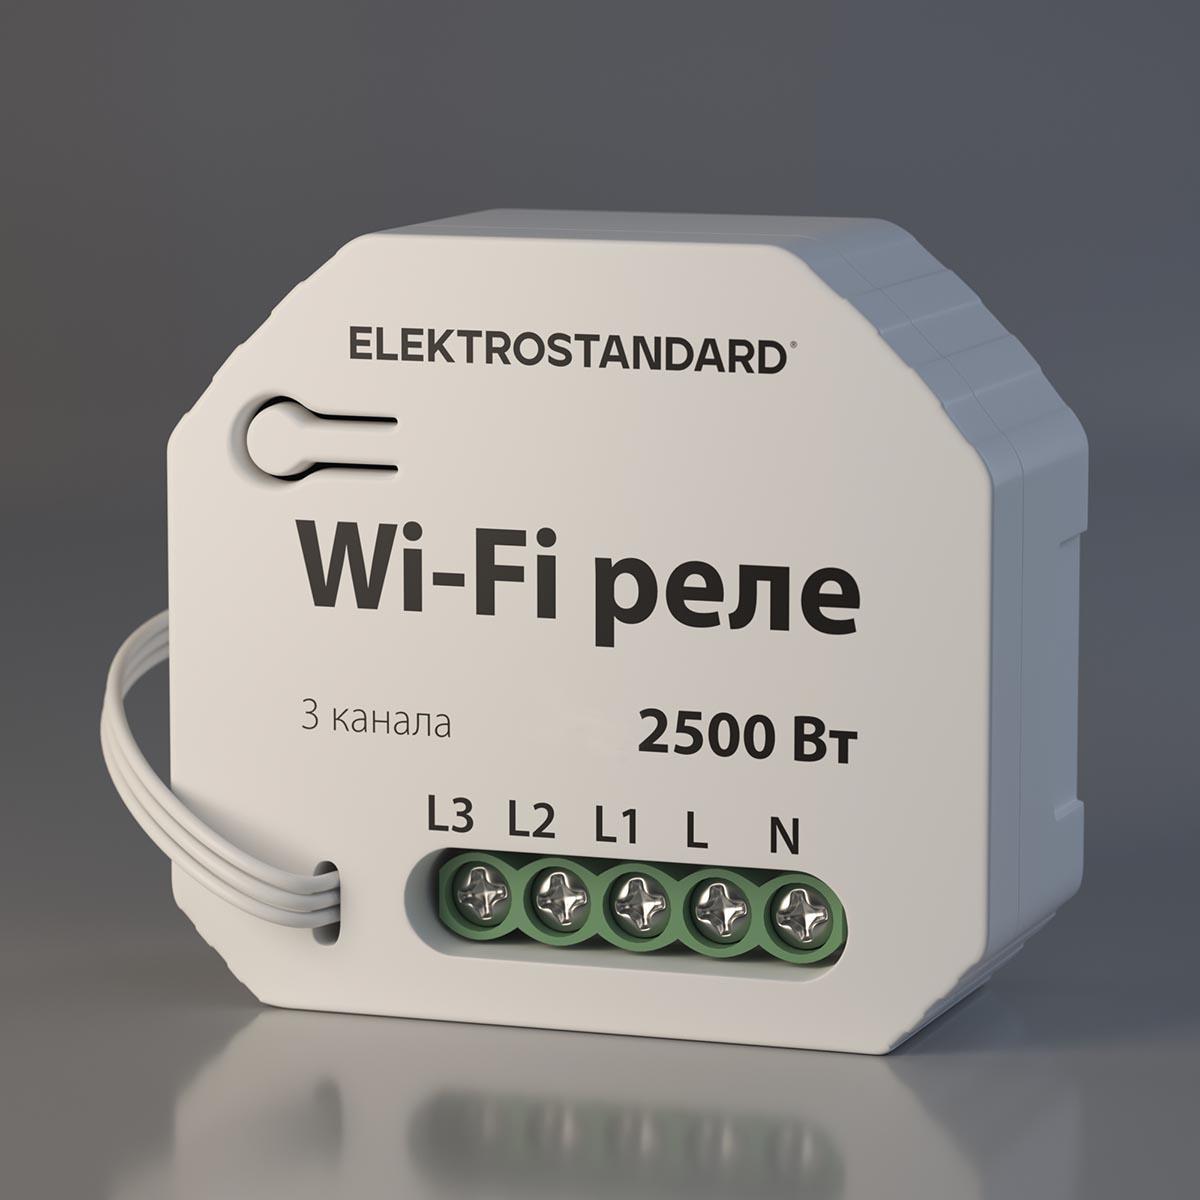  Wi-Fi Elektrostandard 76004/00 a056203